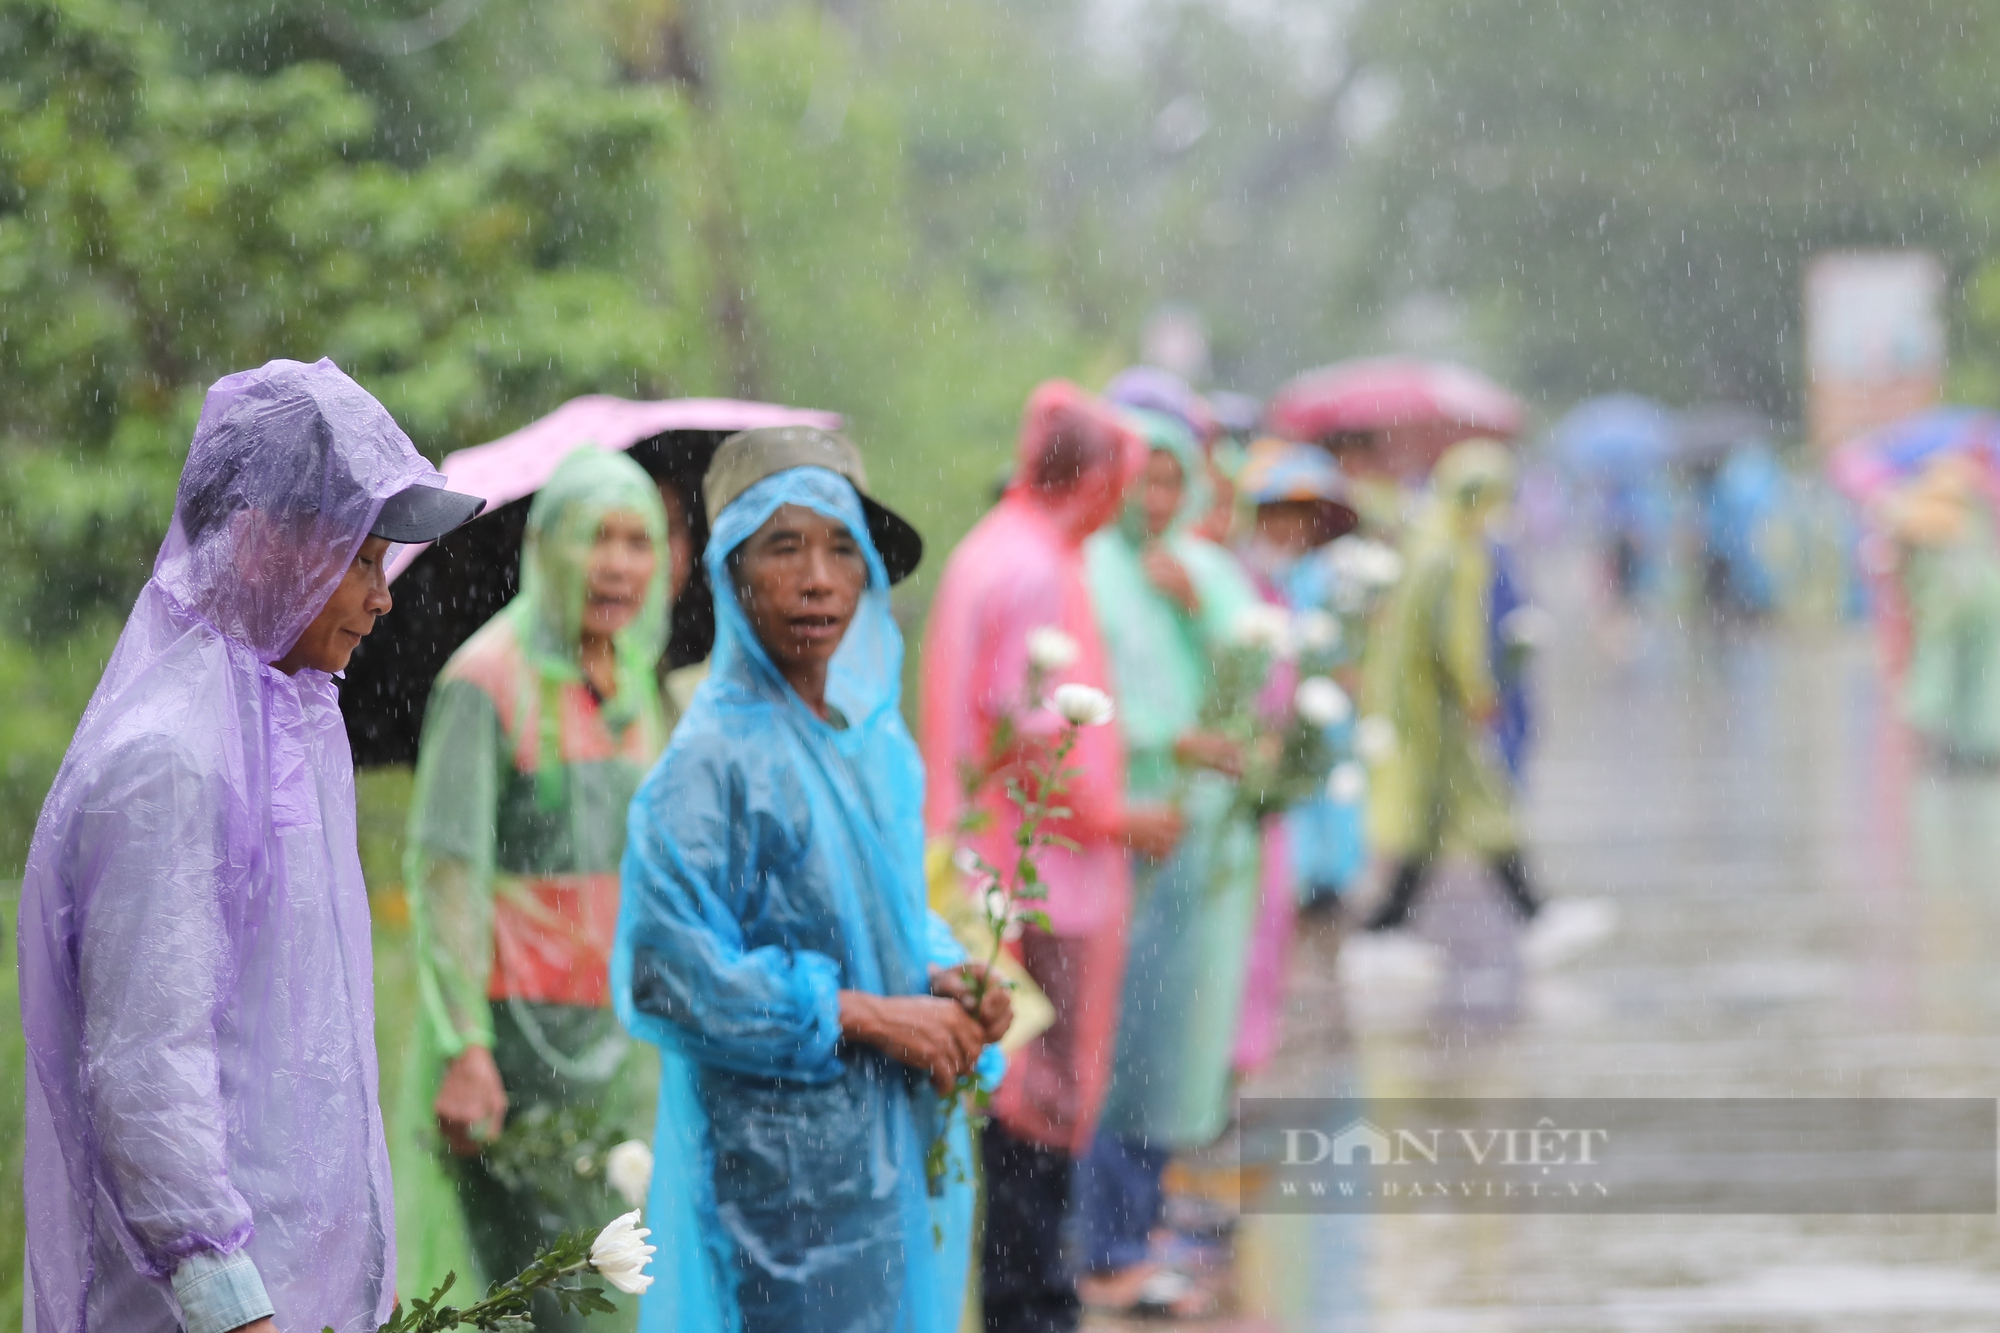 Xúc động cảnh người dân đứng dưới mưa đón Đại úy Lê Ánh Sáng trở về quê nhà - Ảnh 4.